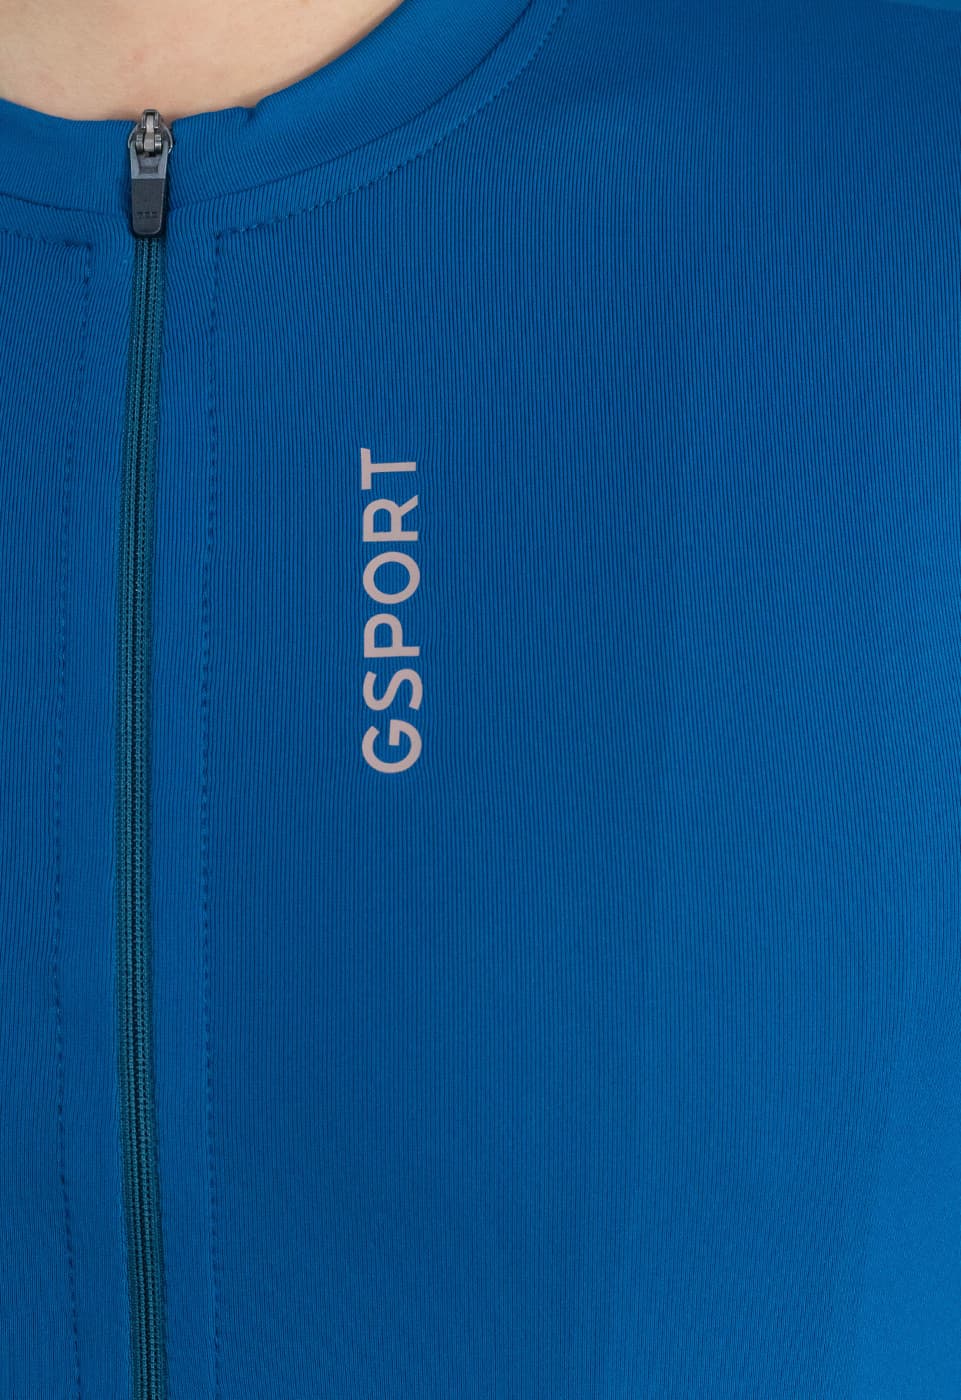 Maillot color azul para hombre con cremallera ykk y logo gsport